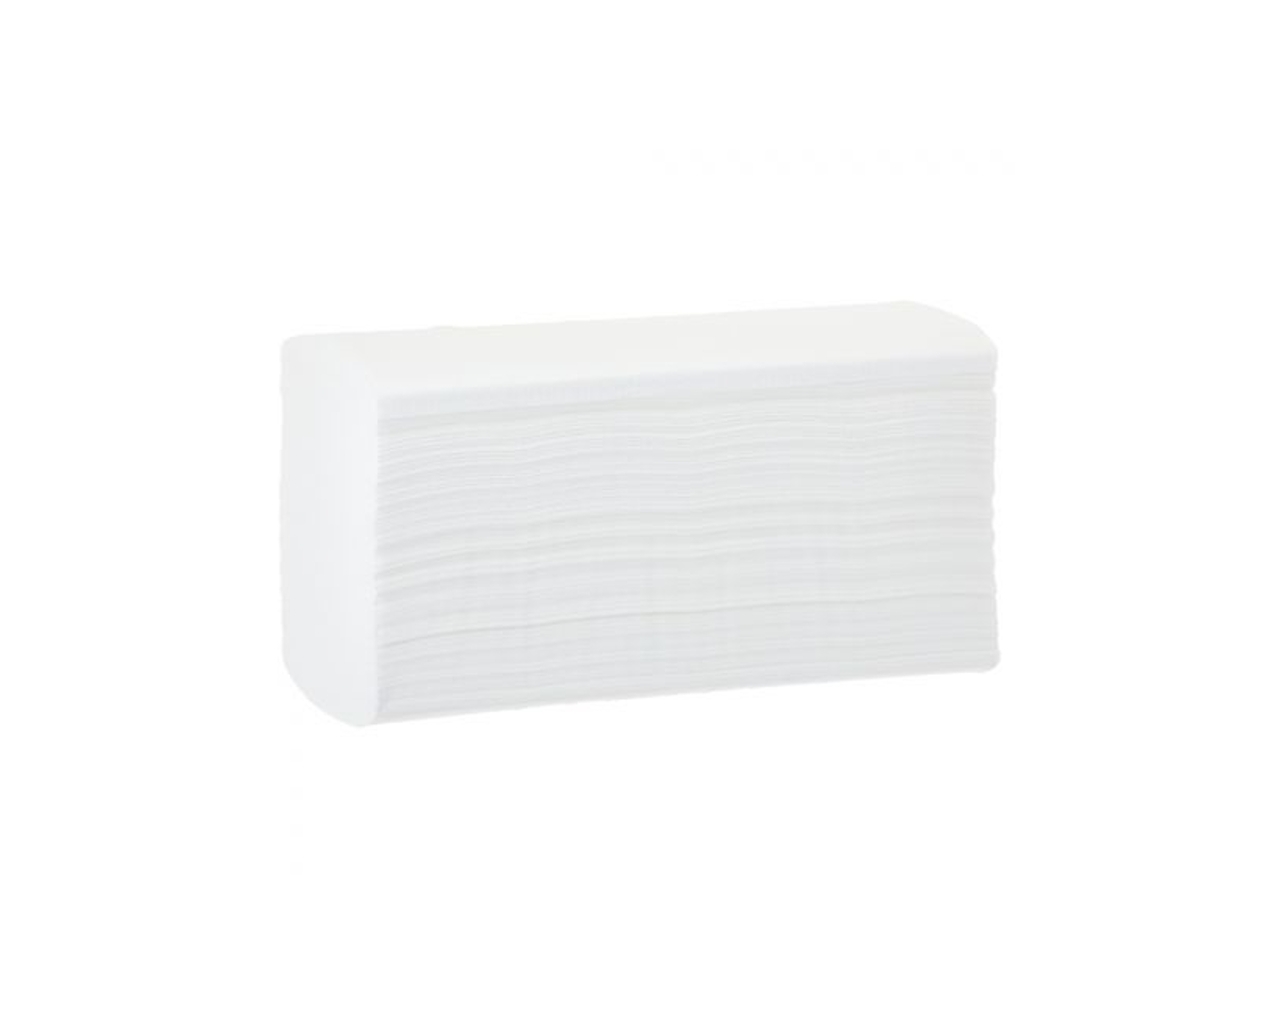 Ręczniki papierowe składane ZZ MERIDA PREMIUM NO CLOG, białe, celulozowe, karton 2700 szt.